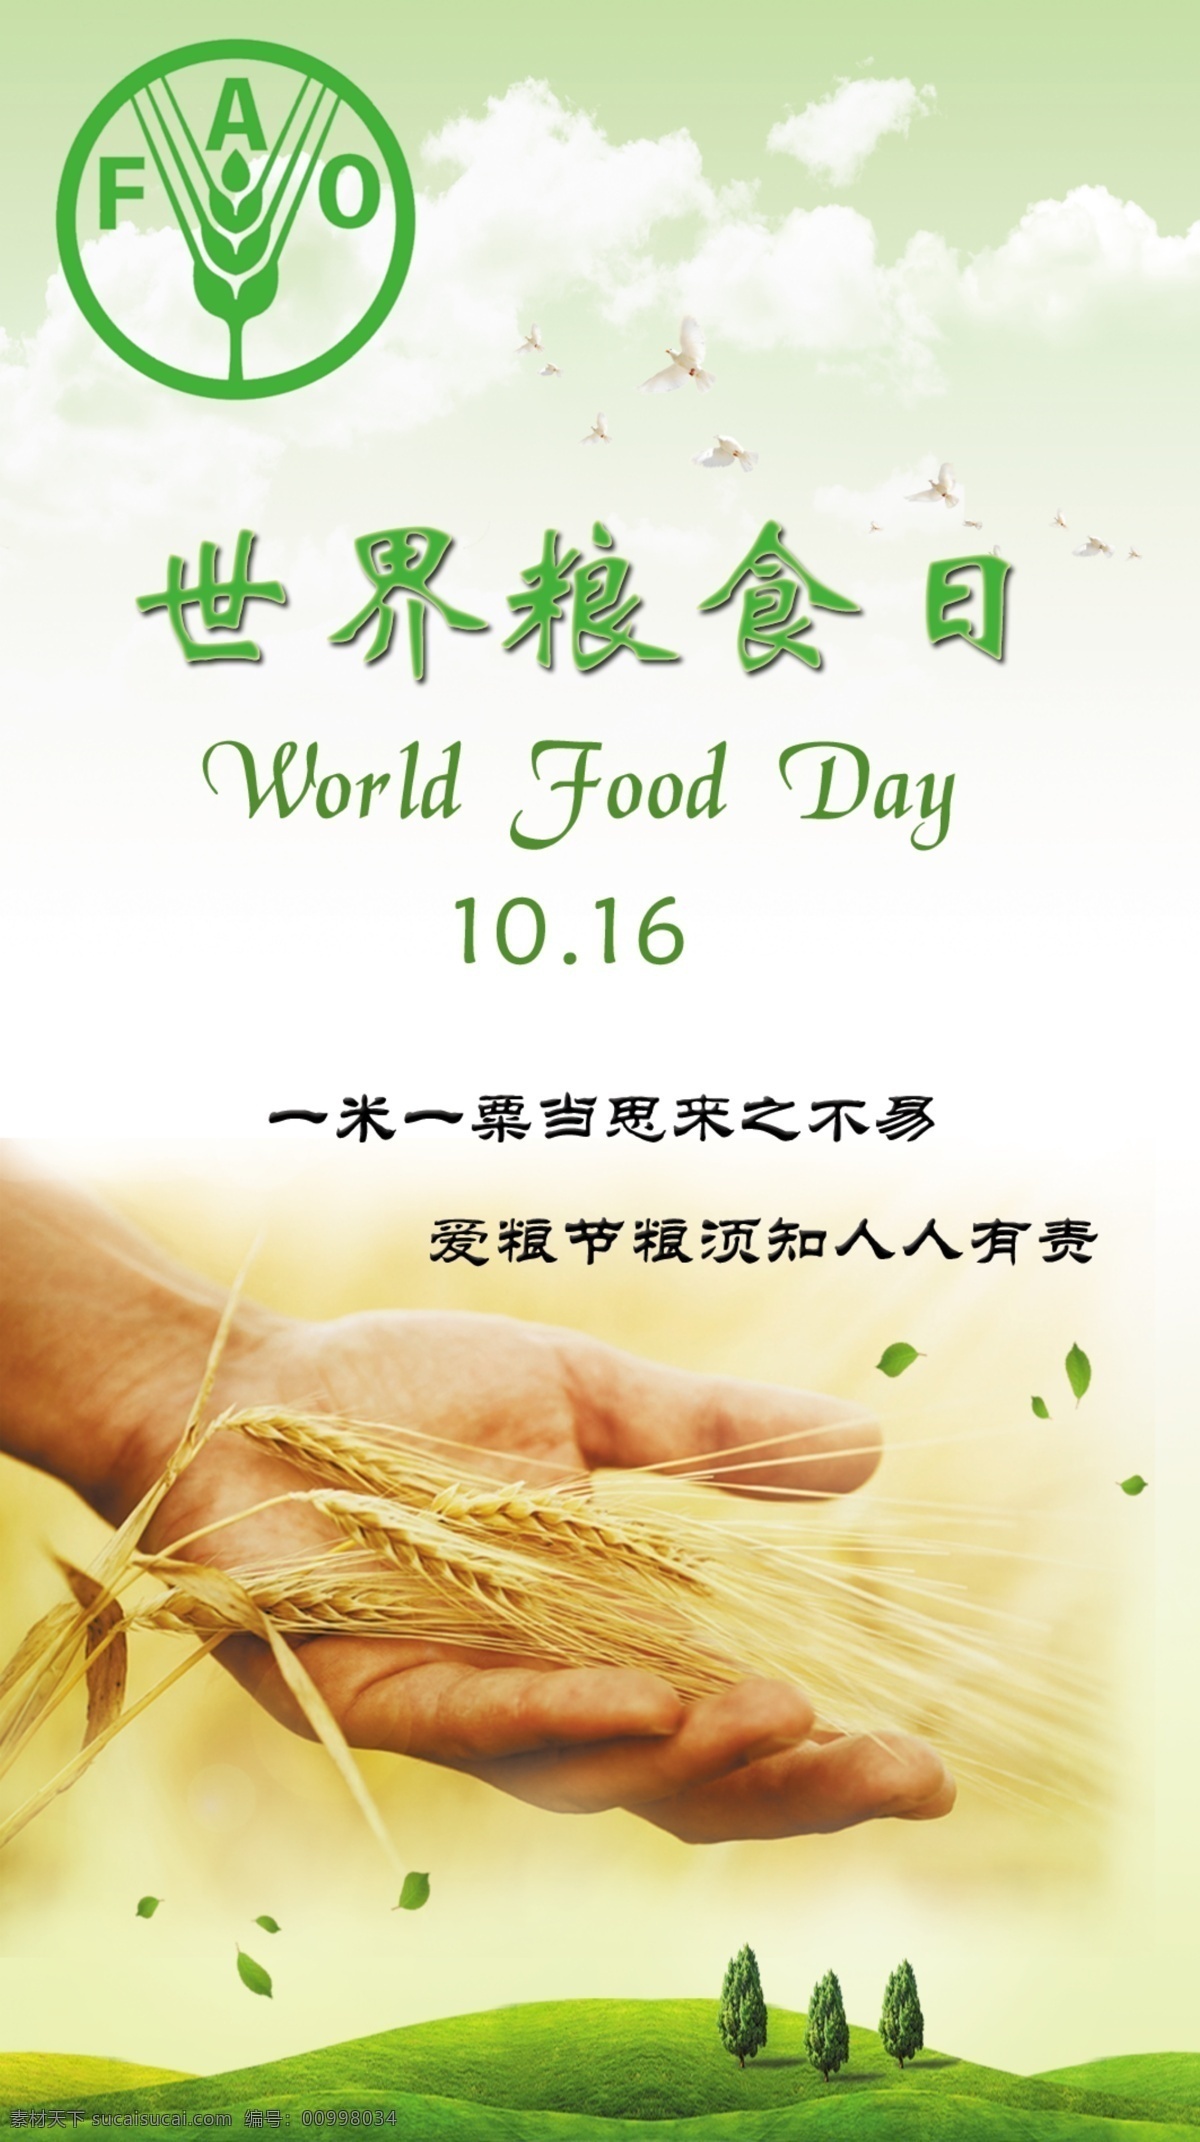 世界 粮食 日 广告 世界粮食日 绿色 节约用粮 手 草木 草地 广告设计模板 源文件